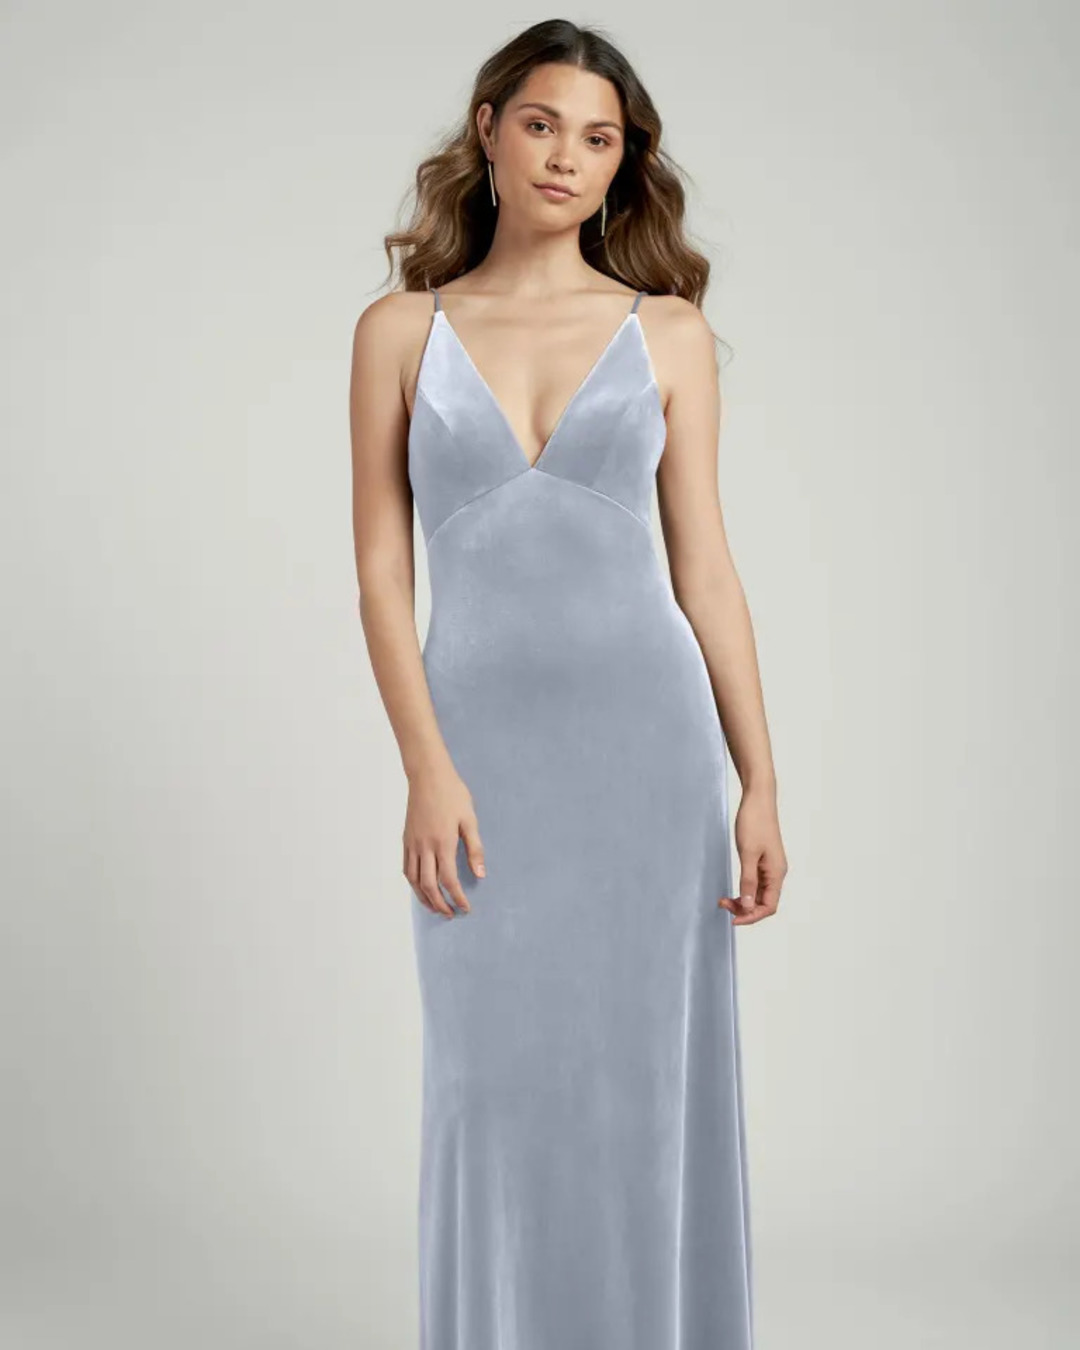 velvet bridesmaid dresses blue